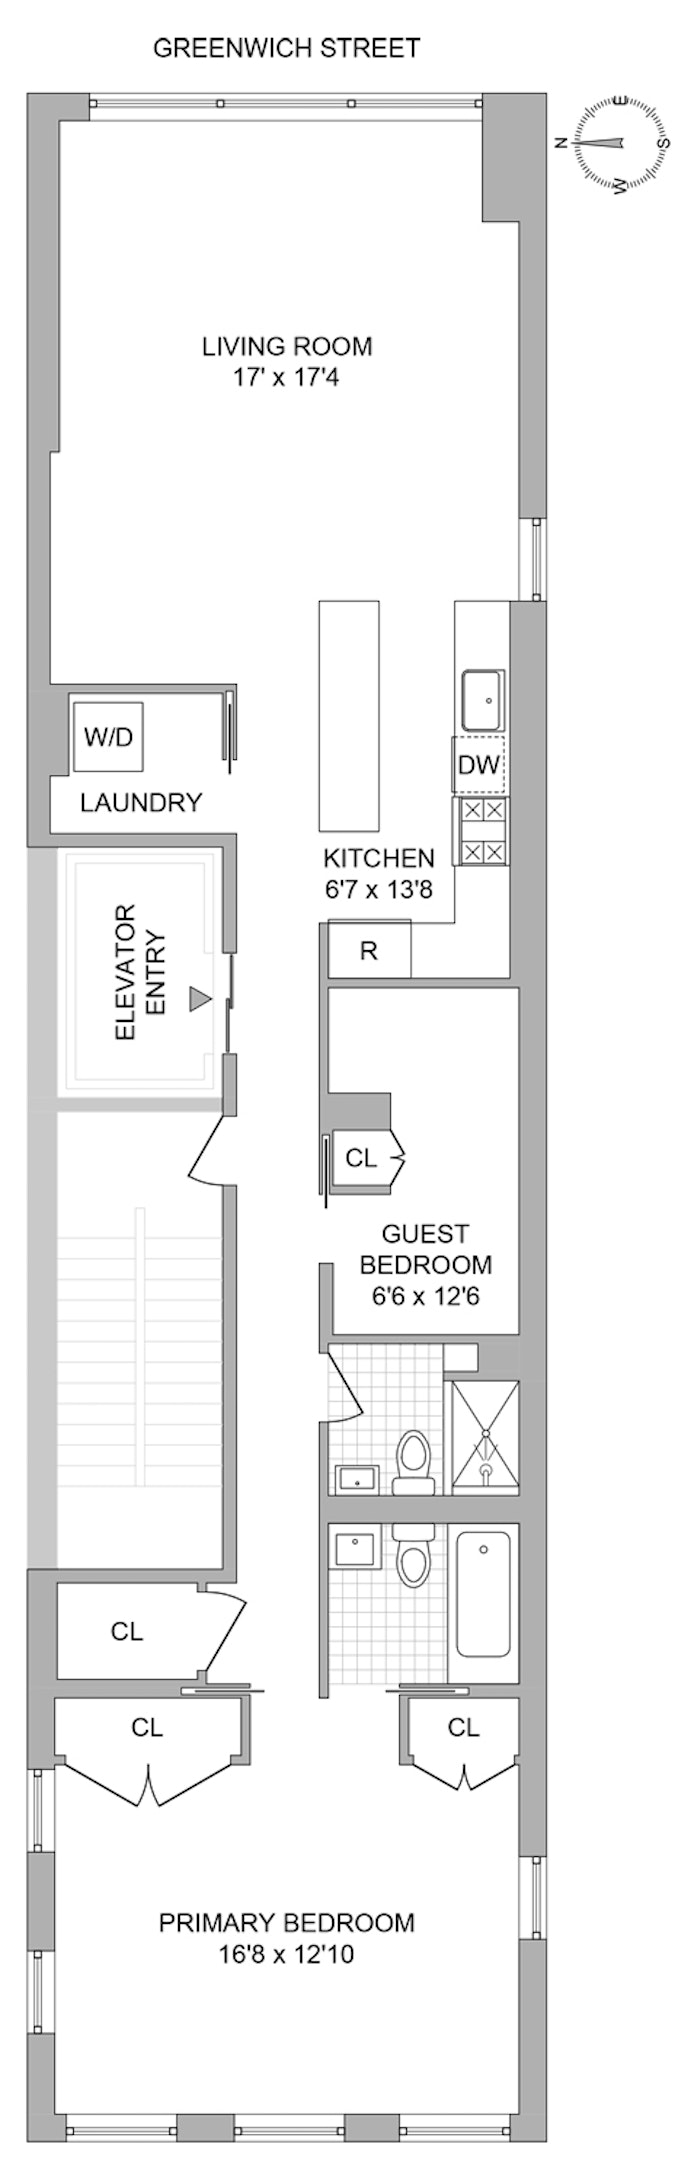 Floorplan for 448 Greenwich Street